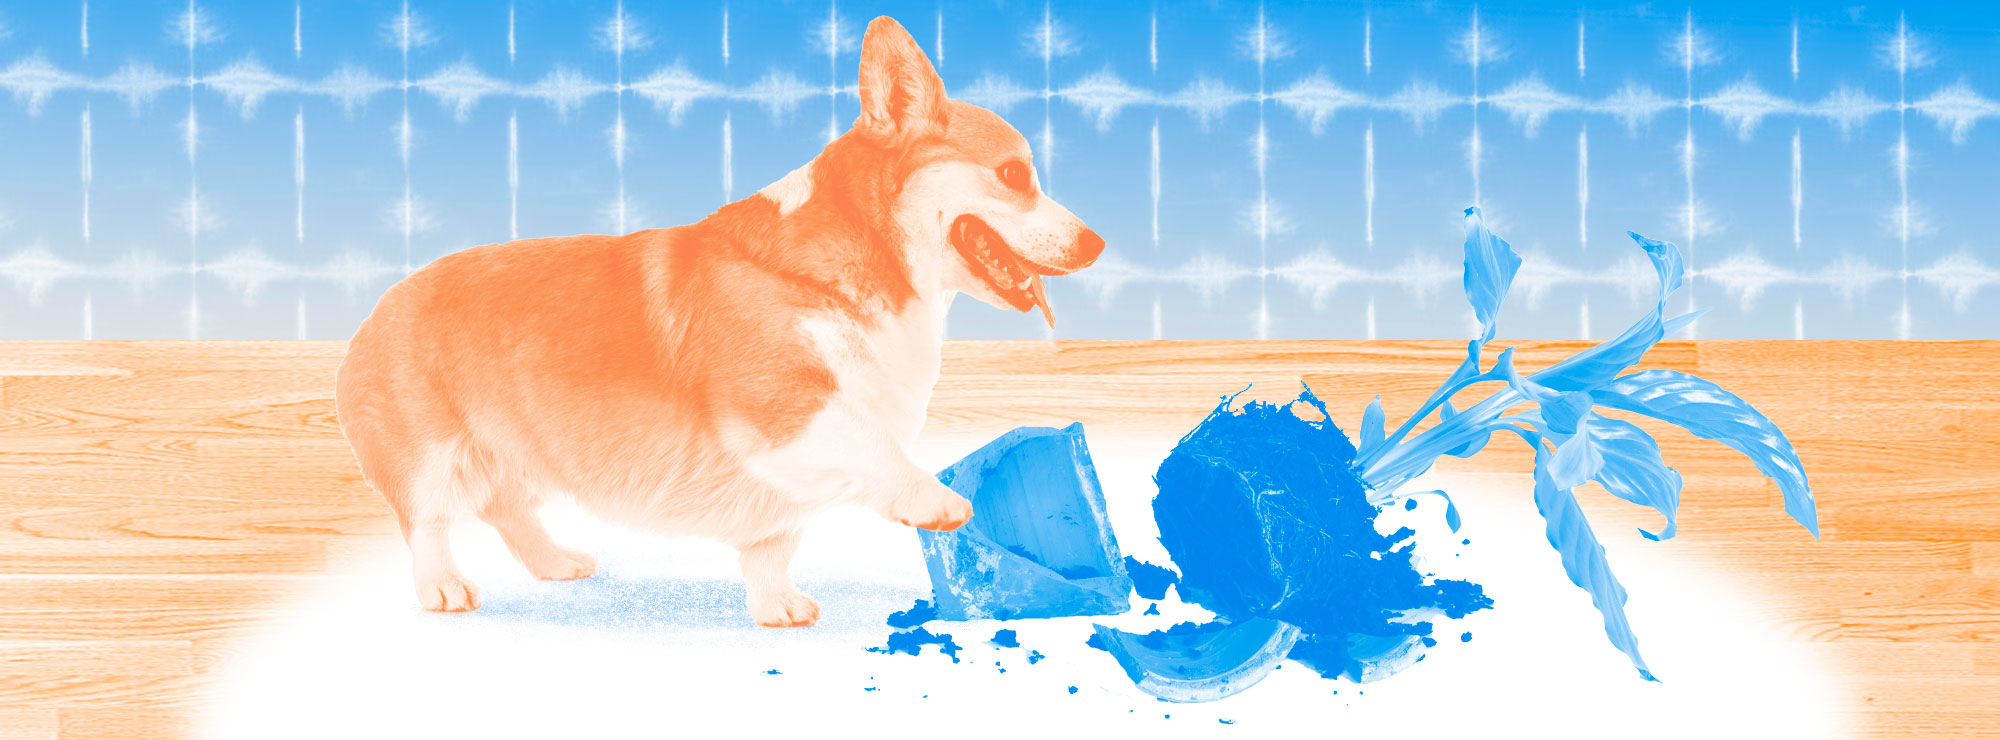 Полноразмерная обложка поста на тему: Как подготовить дом к появлению собаки